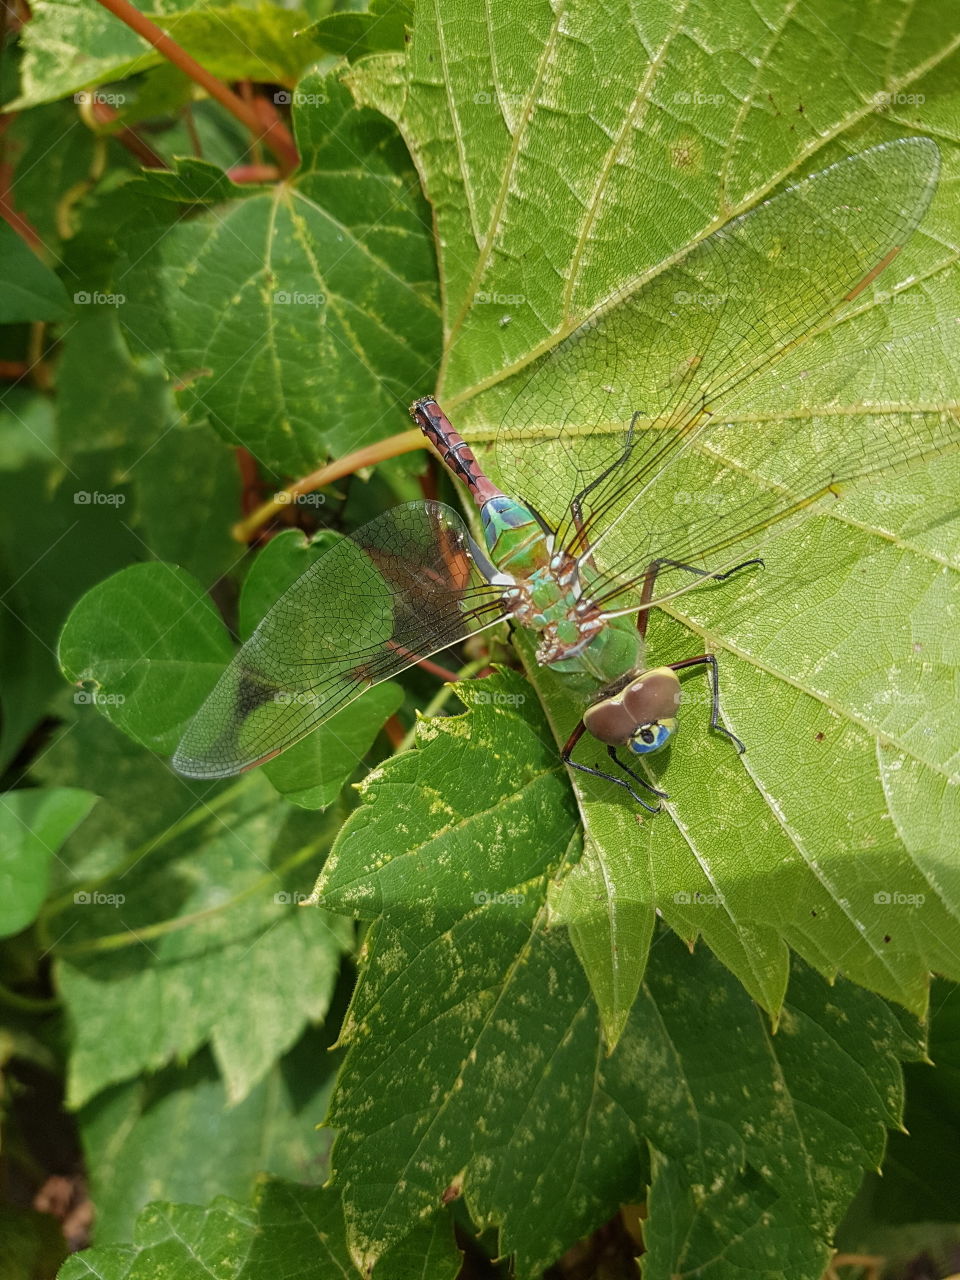 Dragonfly on a leaf